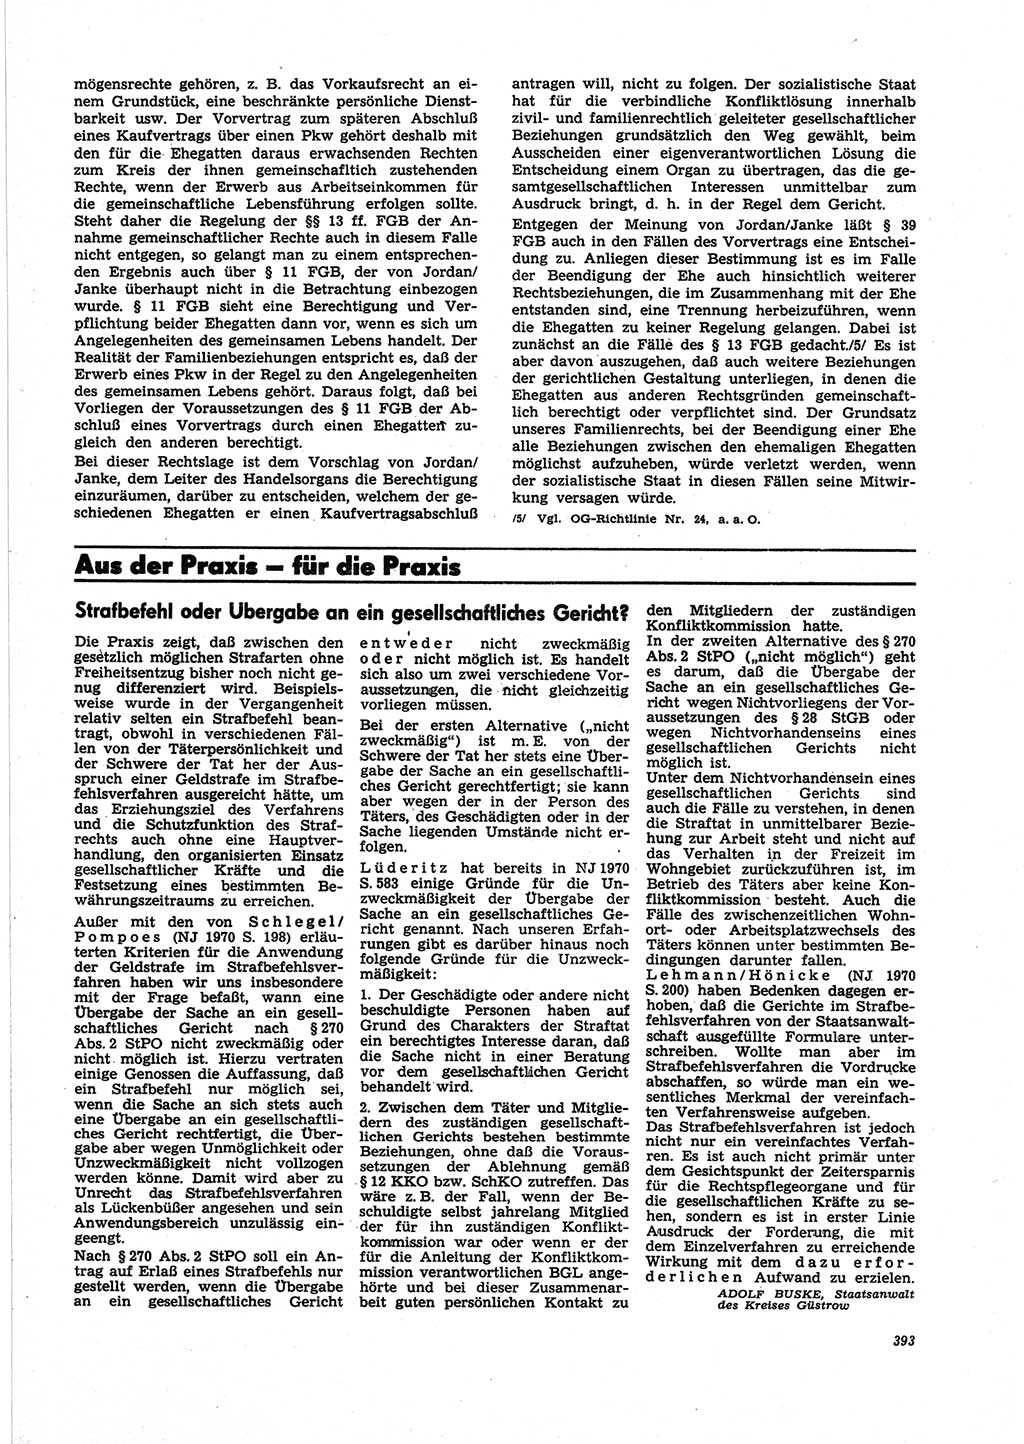 Neue Justiz (NJ), Zeitschrift für Recht und Rechtswissenschaft [Deutsche Demokratische Republik (DDR)], 25. Jahrgang 1971, Seite 393 (NJ DDR 1971, S. 393)